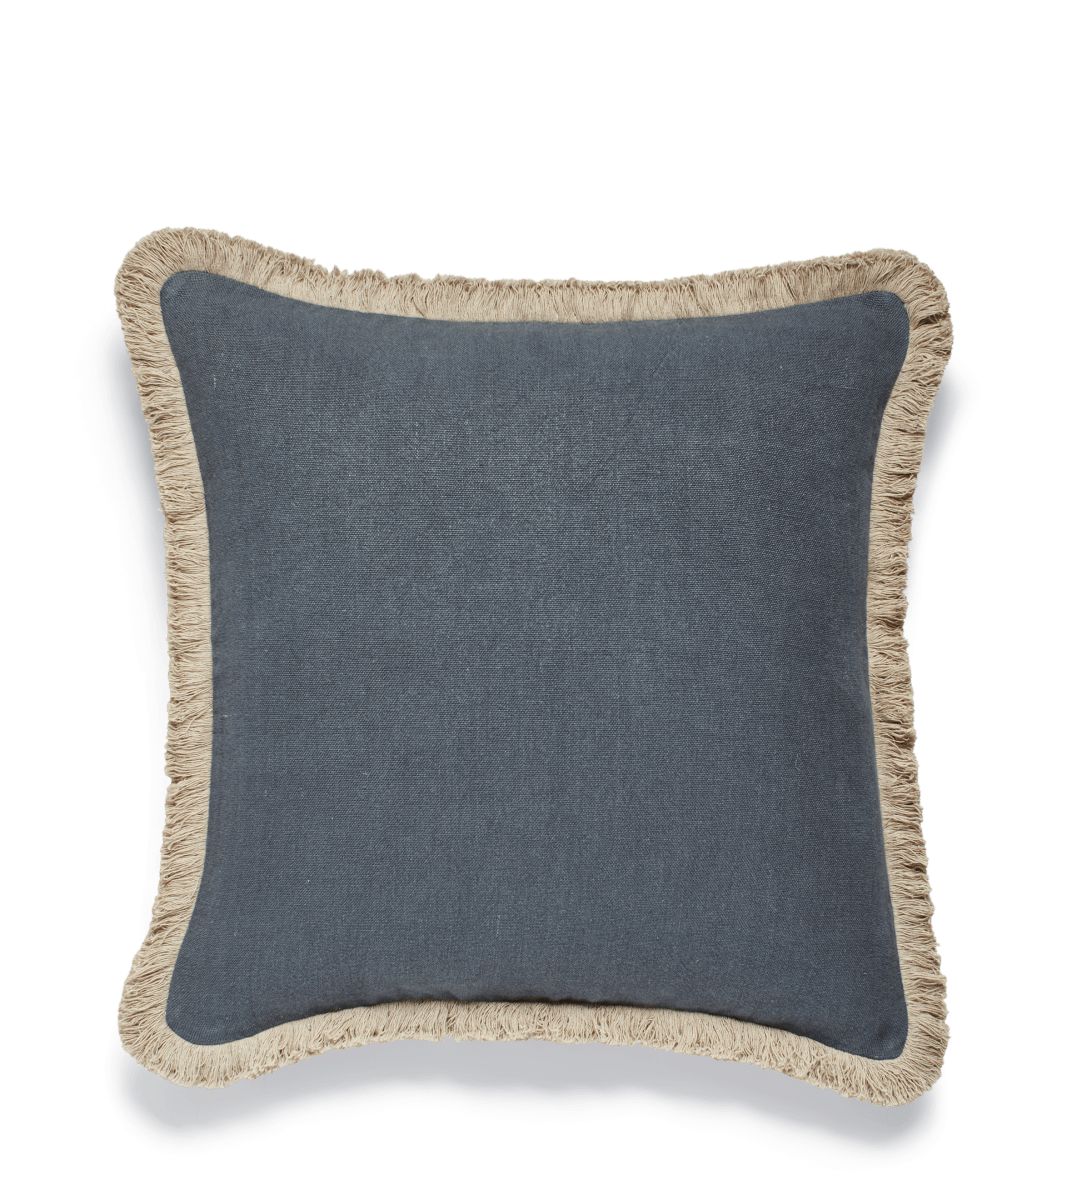 Stonewashed Linen Pillow Cover With Fringing- Aqua | OKA US